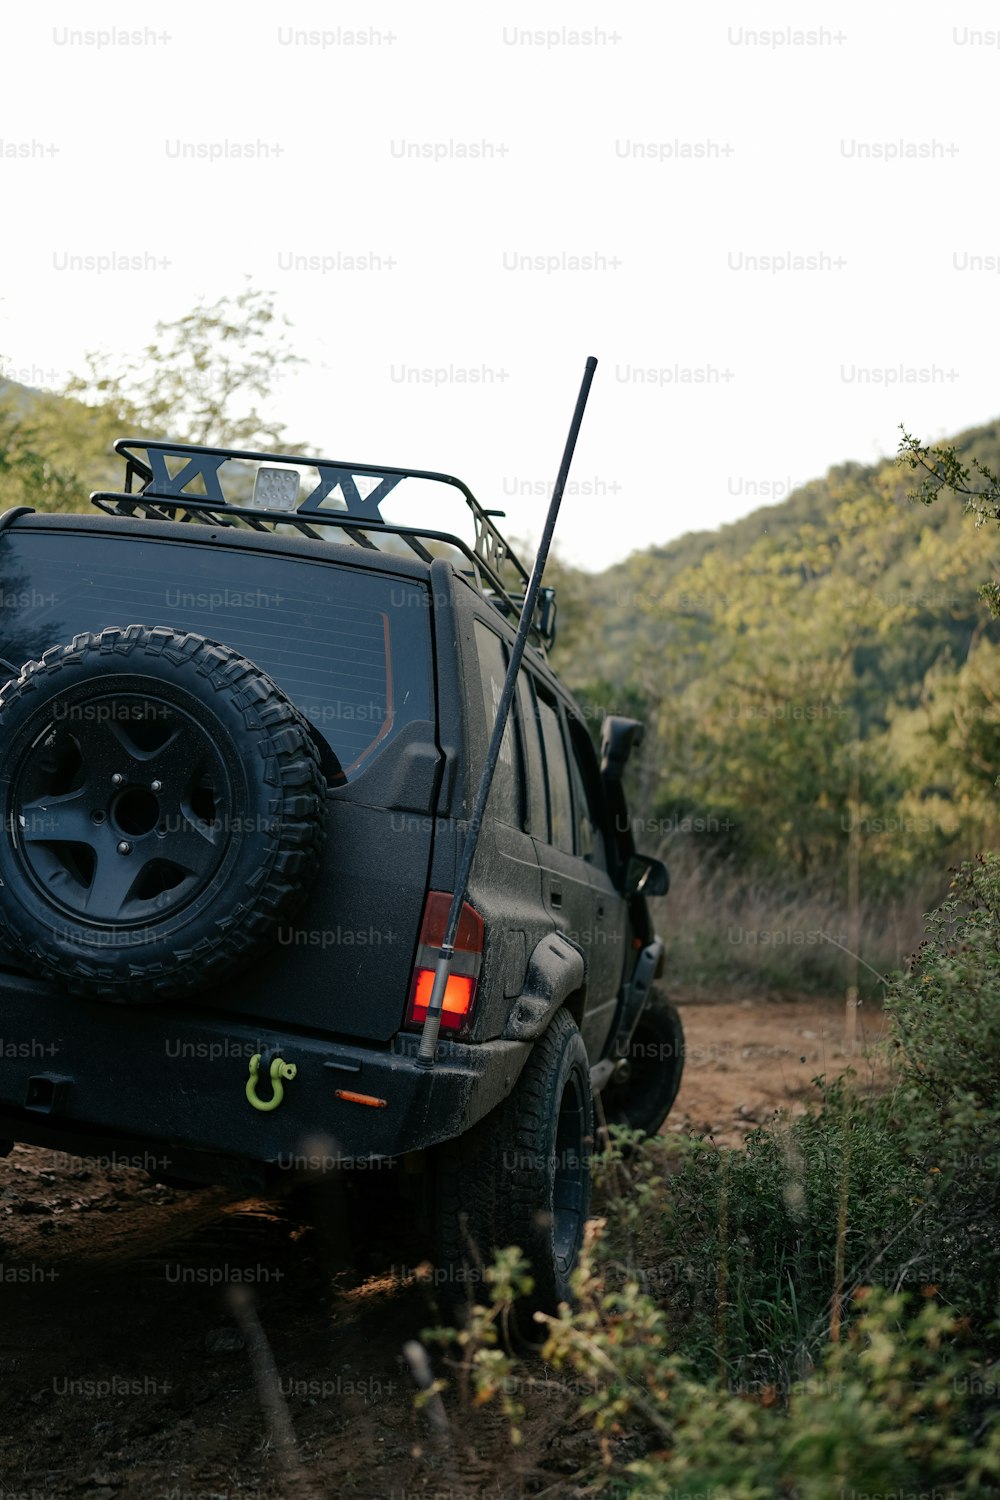 Un jeep está estacionado al costado de un camino de tierra